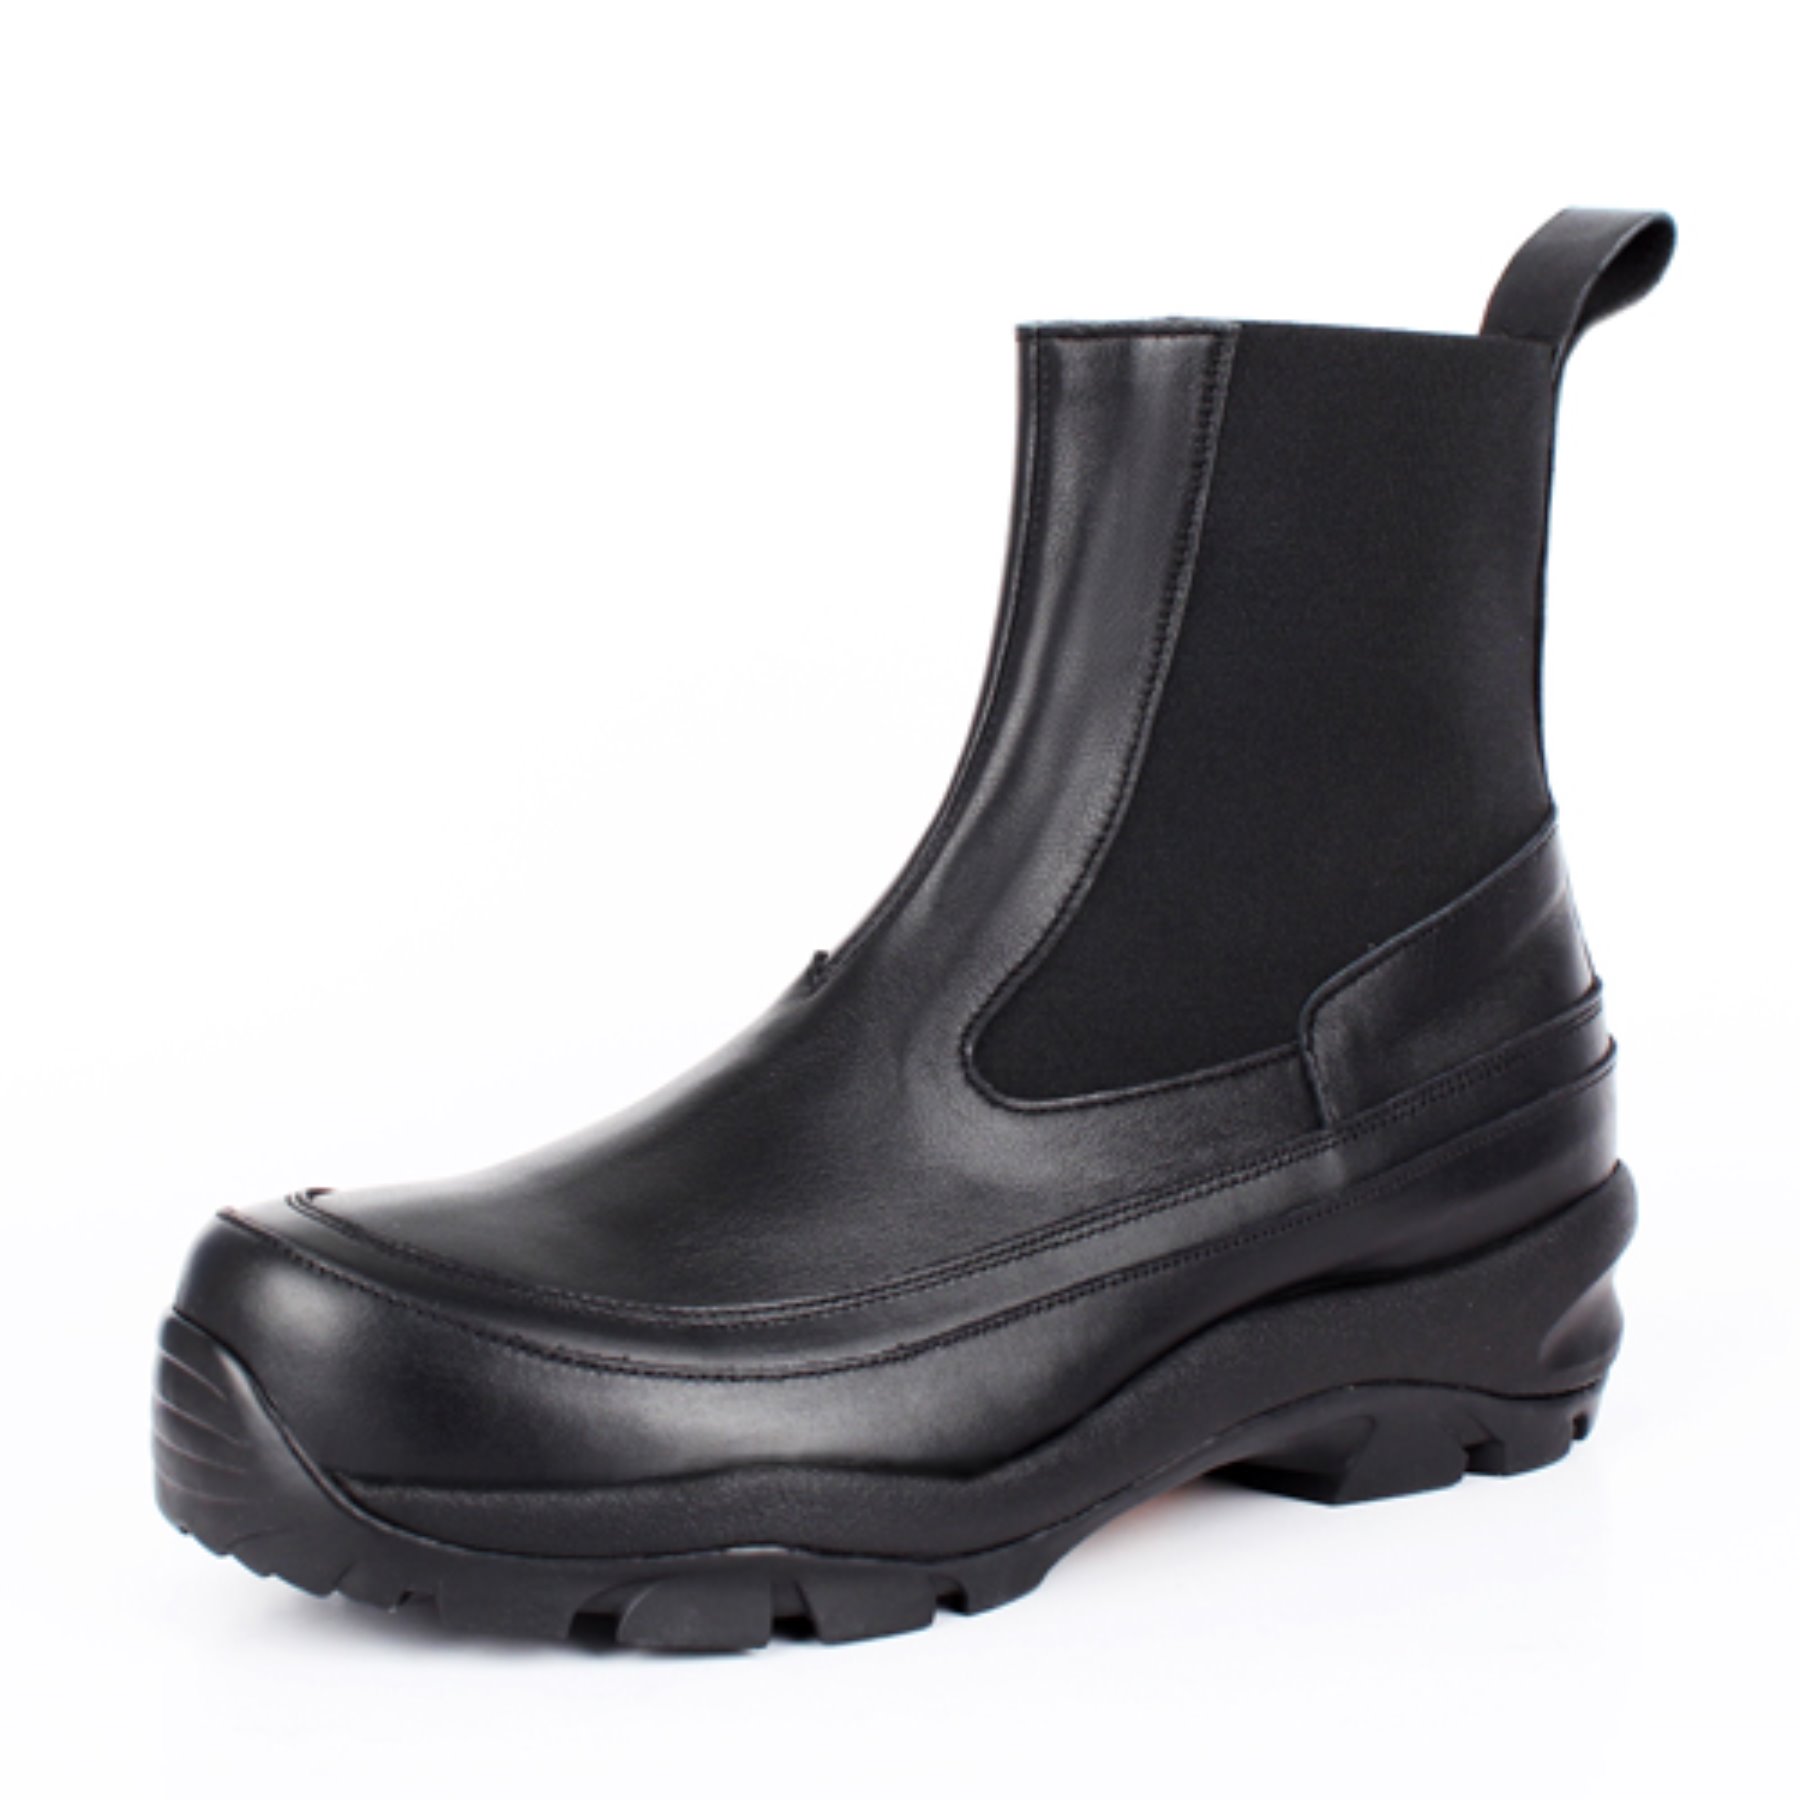 [30% sale]DAVID STONE D106 chelsea boots (vibram edition)